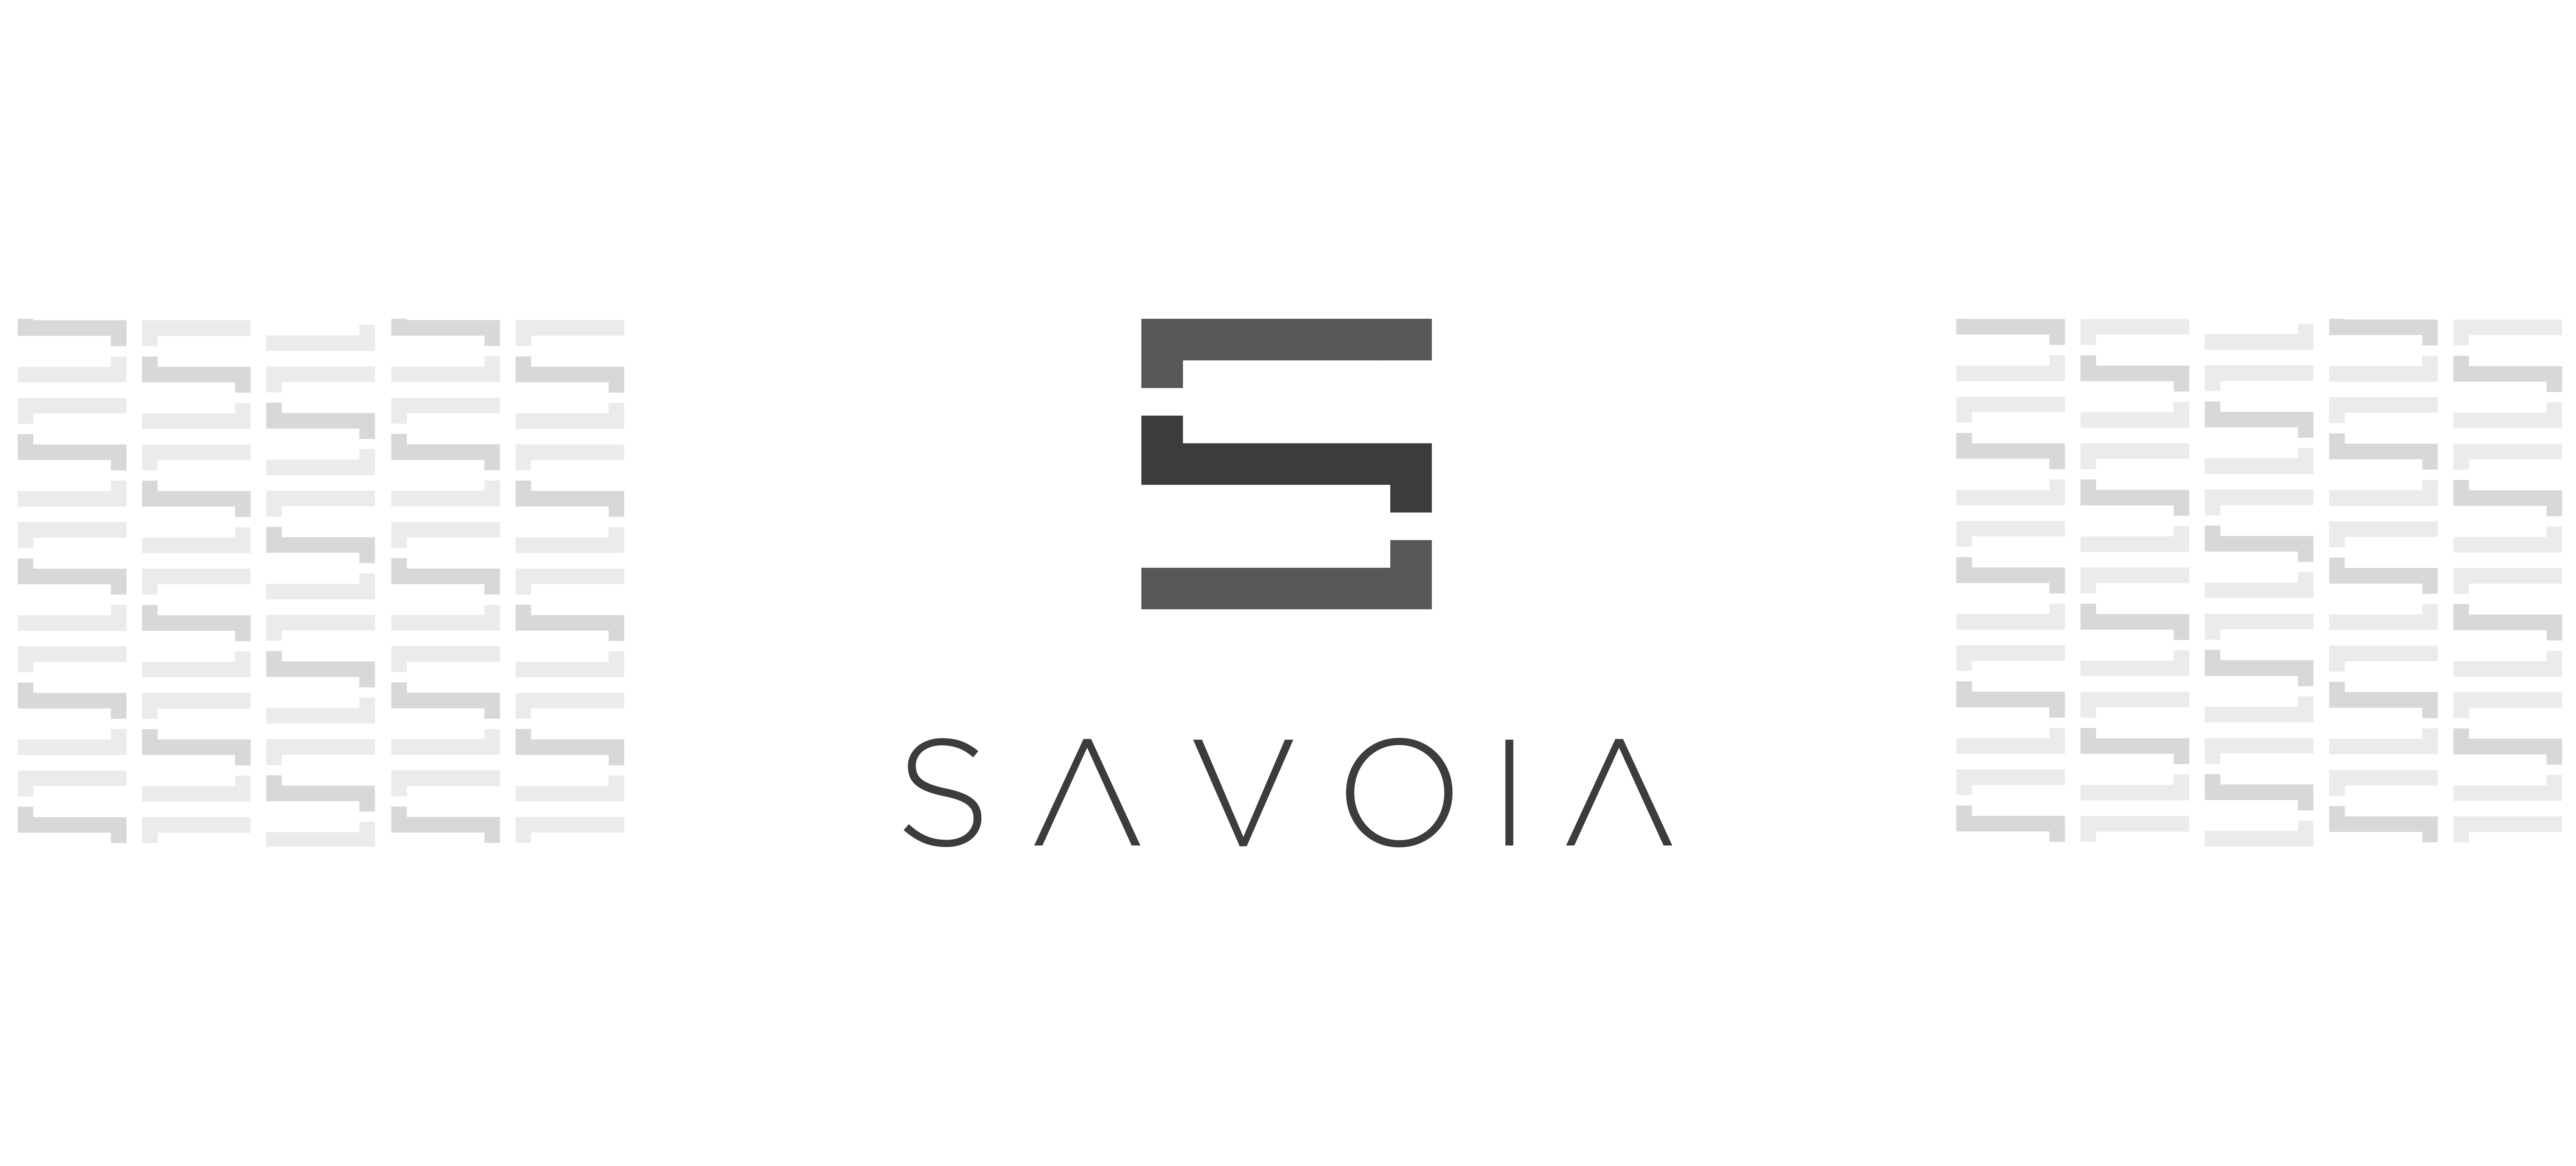 Logo e brand identity di Savoia realizzato da SEBA! grafico di Gravellona Toce nel VCO con pattern